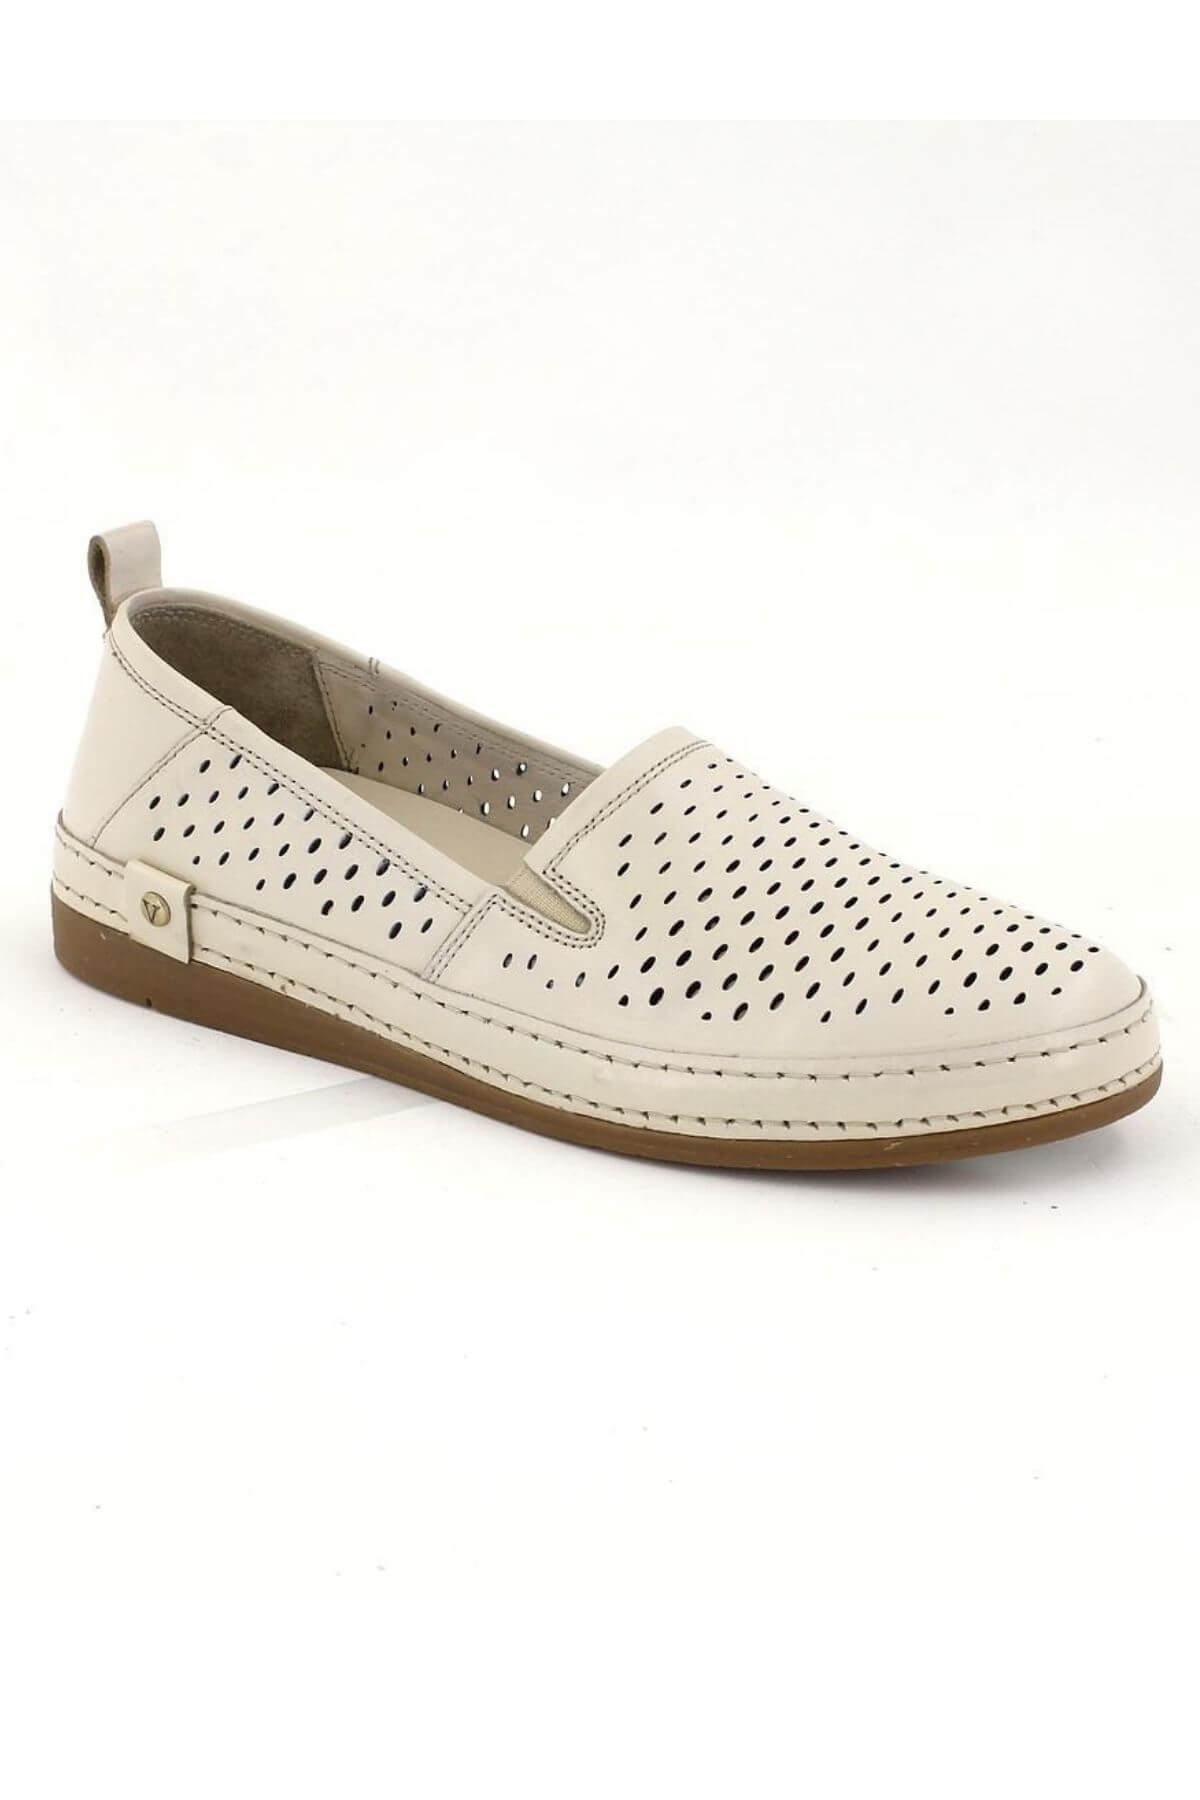 Kadın Yazlık Comfort Deri Ayakkabı Beyaz 2211201Y - Thumbnail